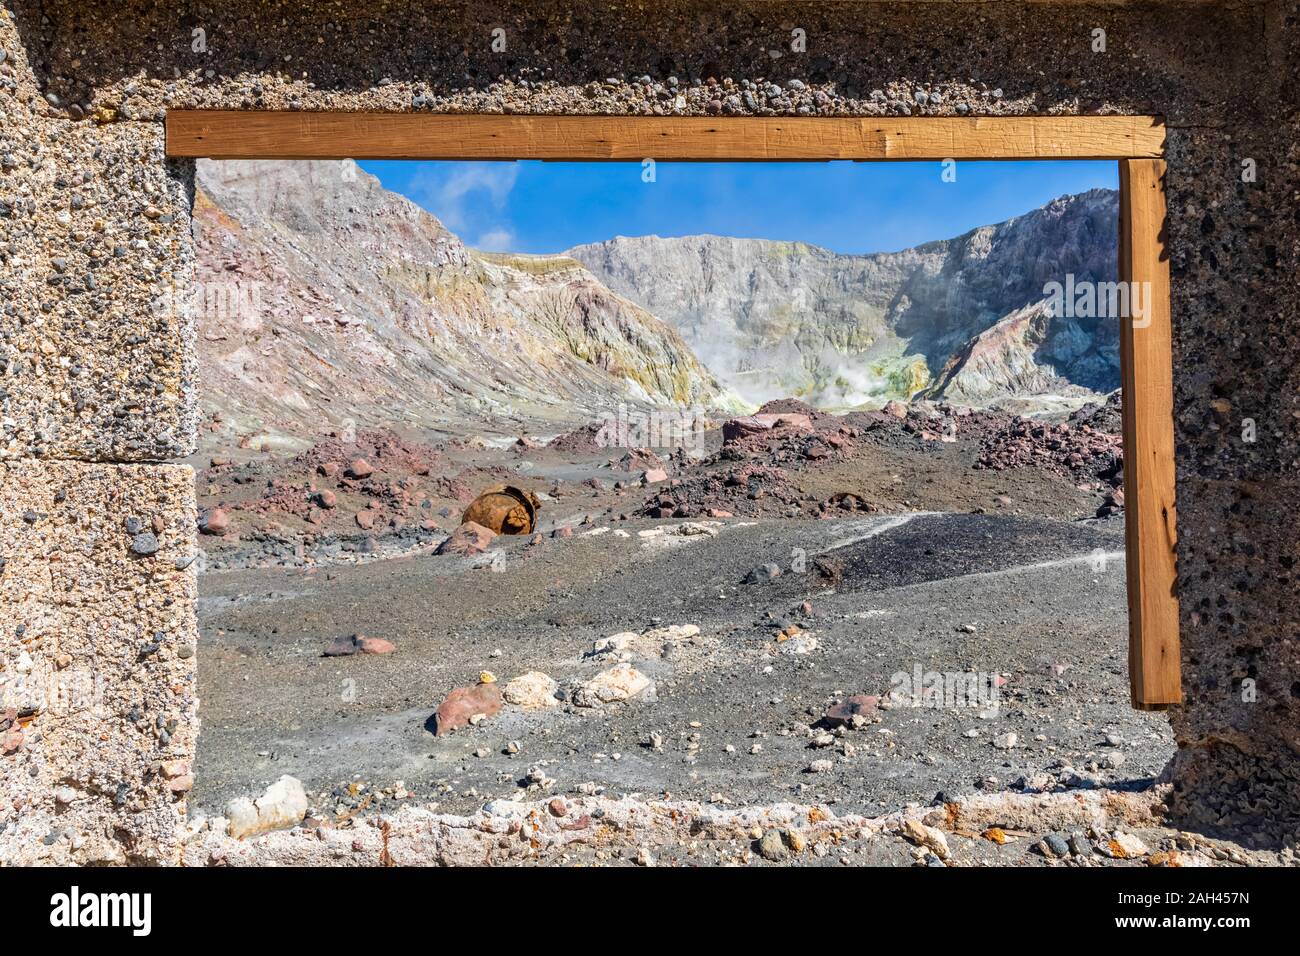 New Zealand, North Island, Whakatane, Window frame of ruined sulphur mine on White Island (Whakaari) Stock Photo